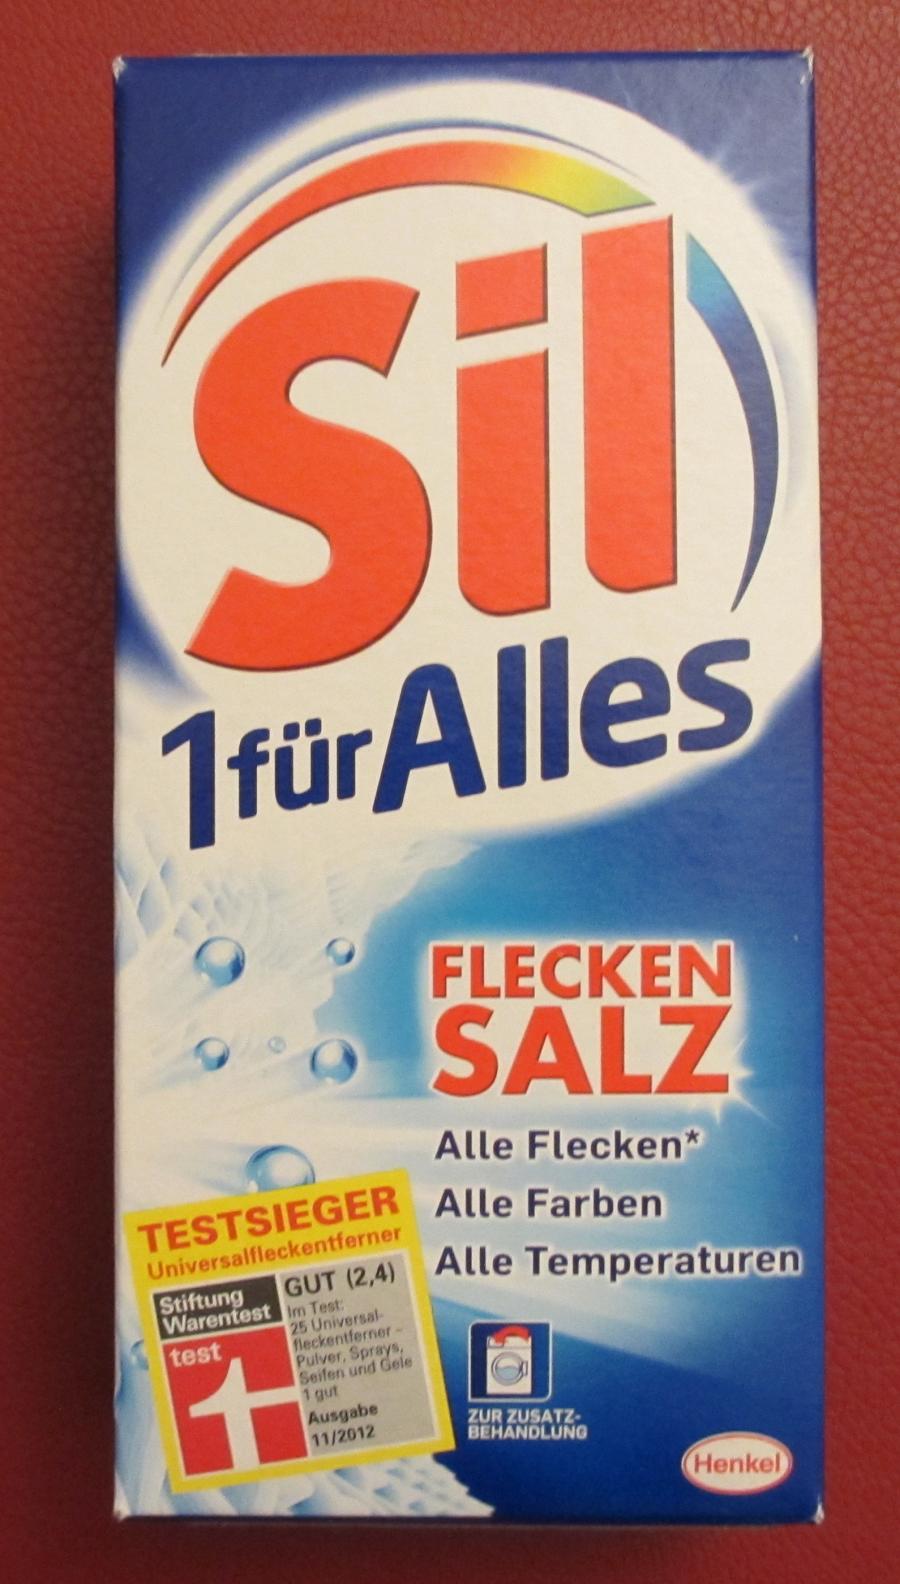 Sil 1-für-Alles-Flecken-Salz